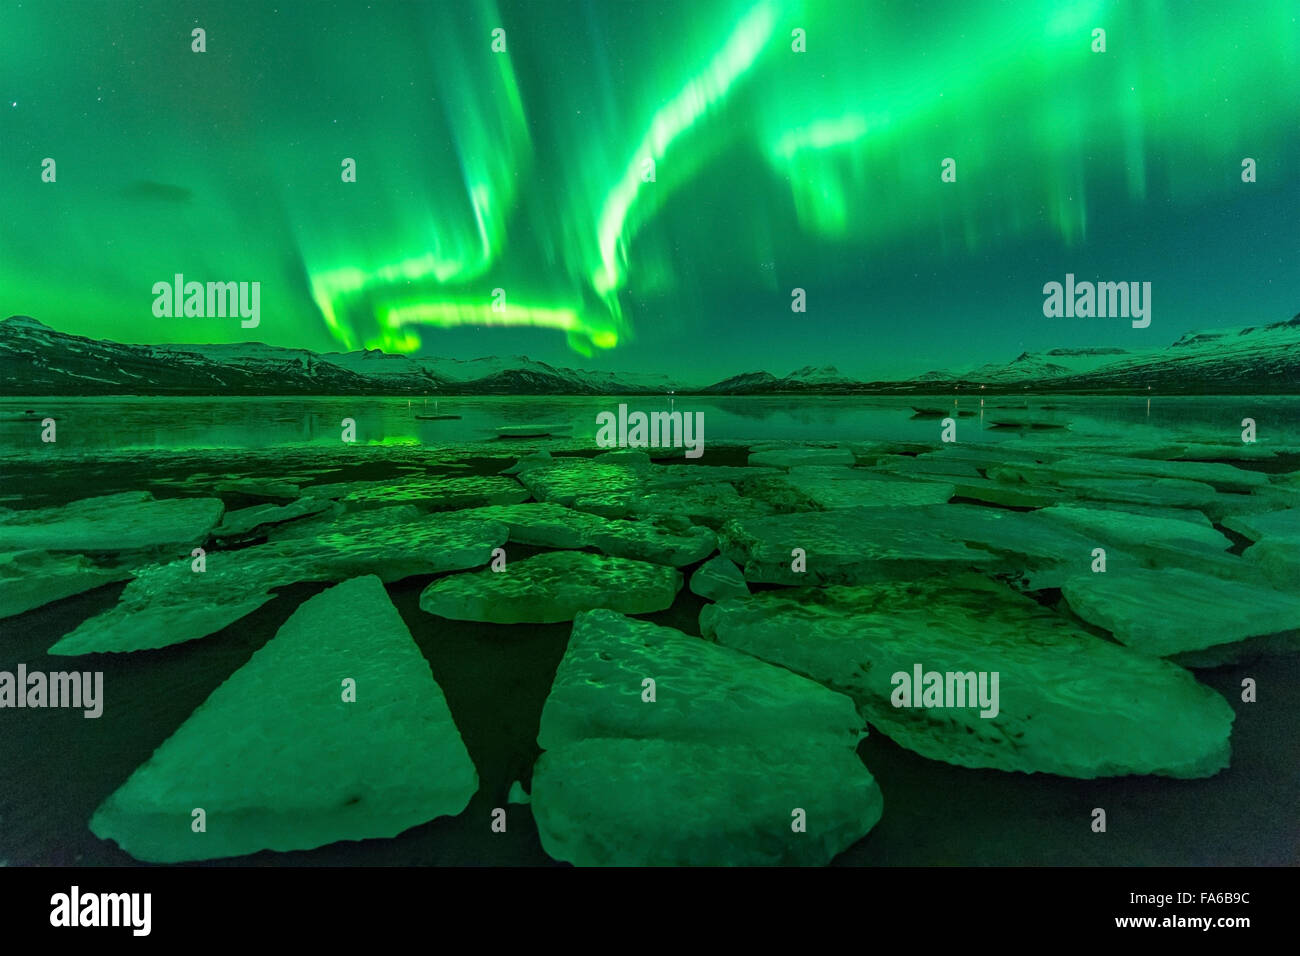 Northern lights (Aurora borealis), Jokulsarlon lagoon, Iceland Stock Photo